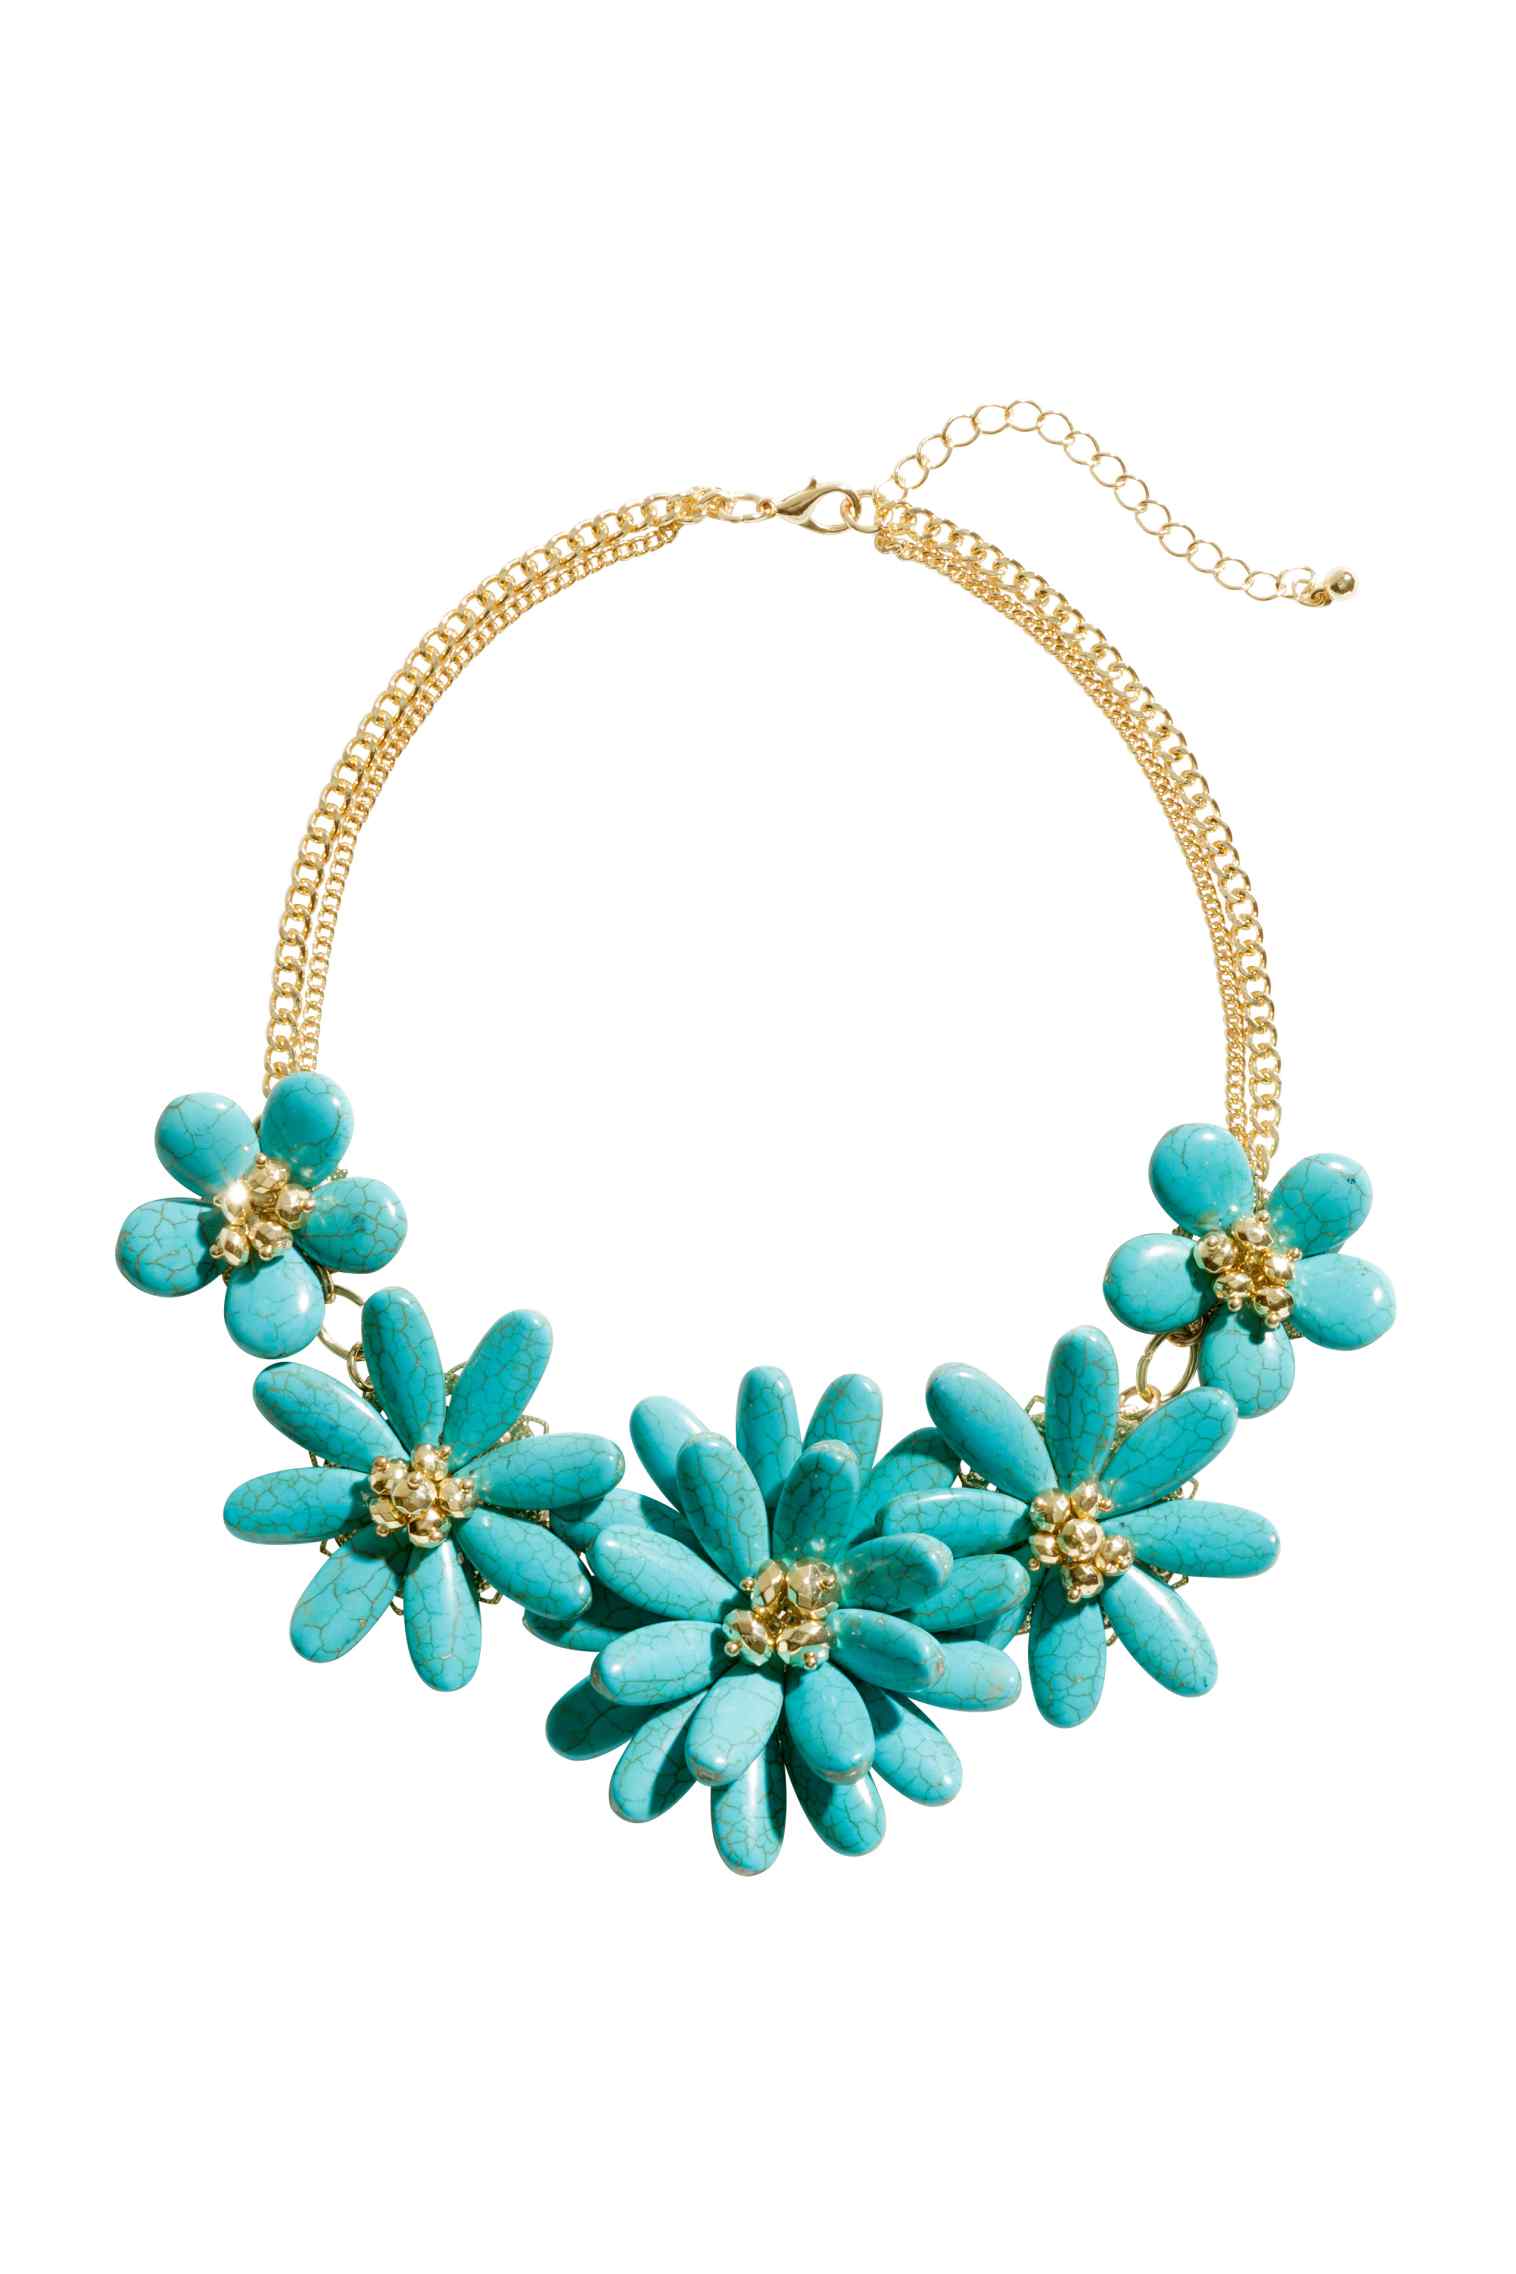 Nuovi trend H&M collane fiori primavera 2015